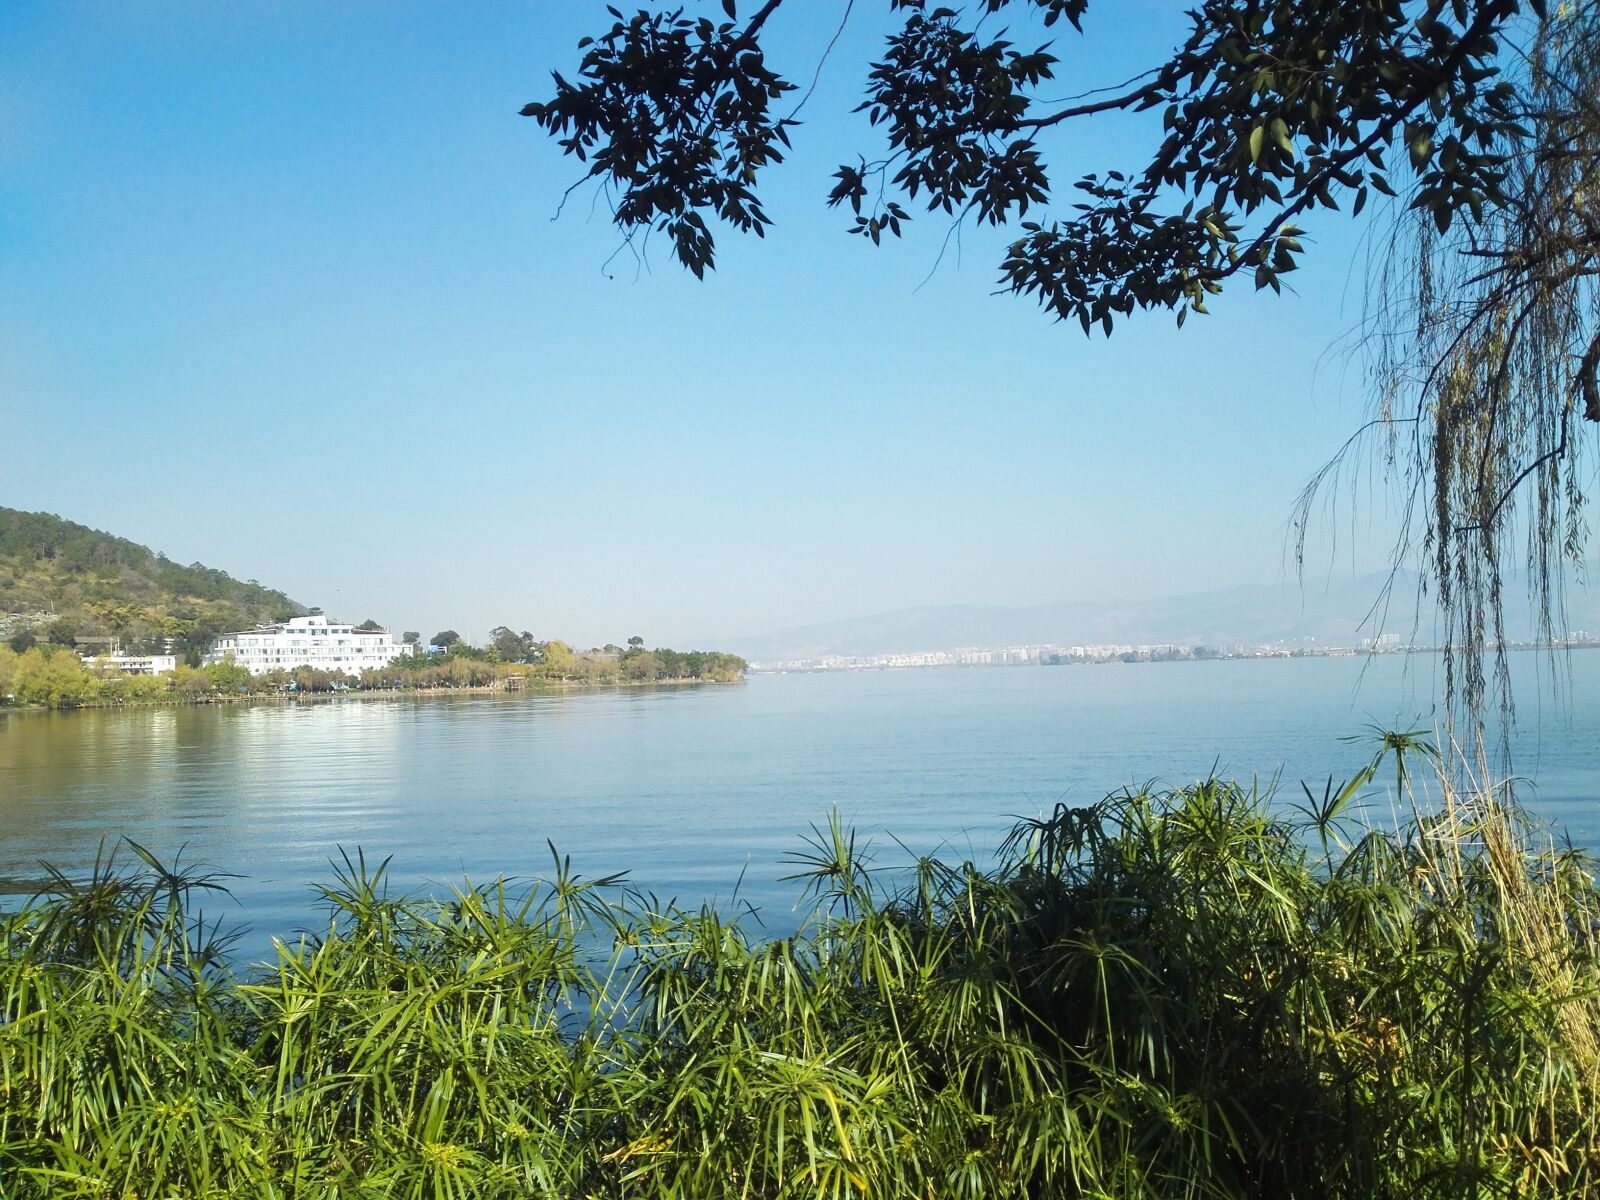 HUAWEI PE-TL10 sample photo. Scenery, lugu lake, 泸沽湖 photography